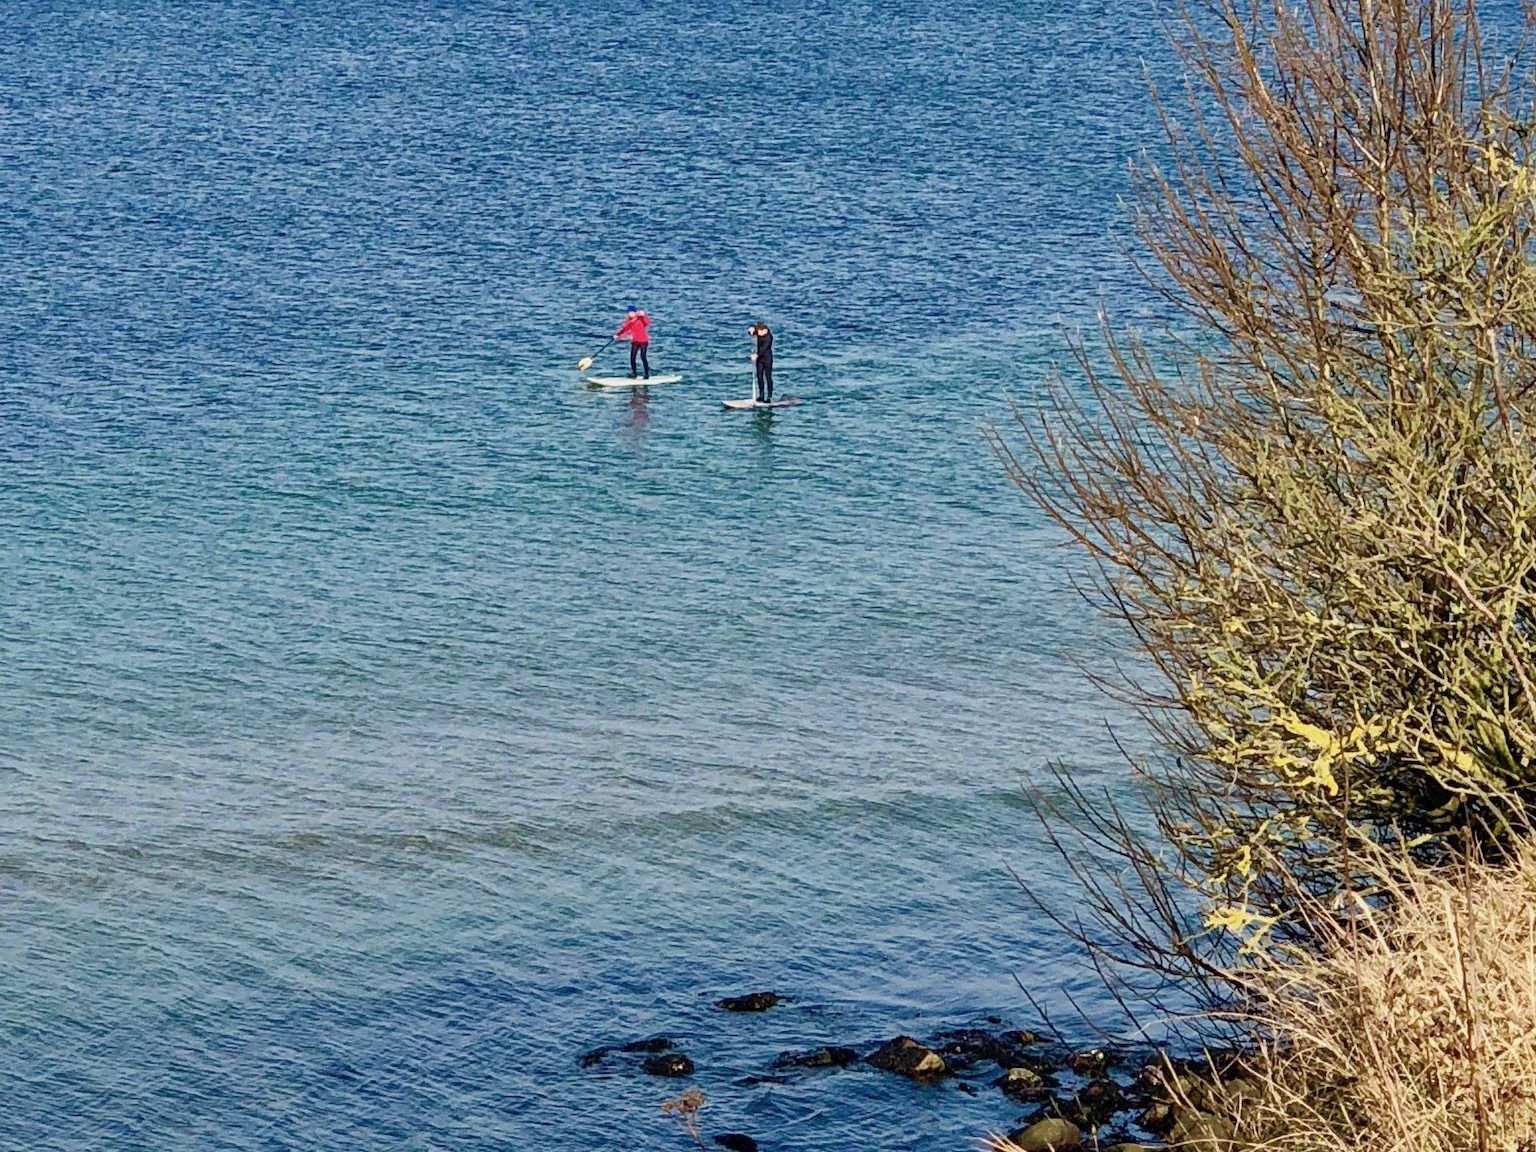 SUP en invierno: en febrero, dos Stand Up Paddlers están en el mar Báltico 4 Grad. Foto: Sascha Tegtmeyer